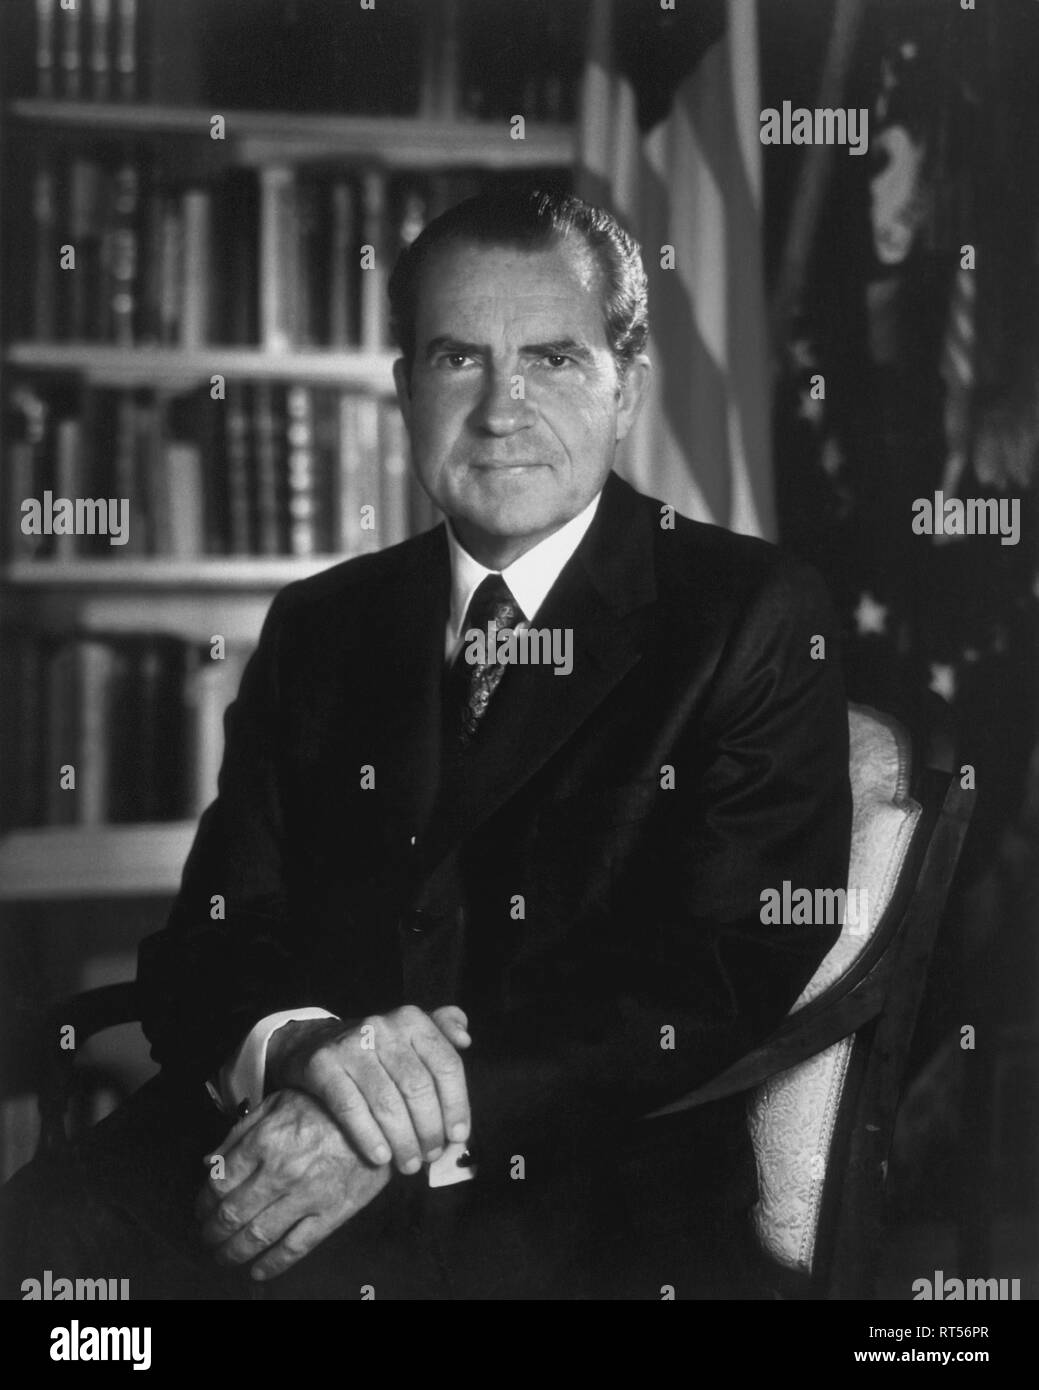 Amerikanische Geschichte Porträt von Präsident Richard Nixon. Stockfoto